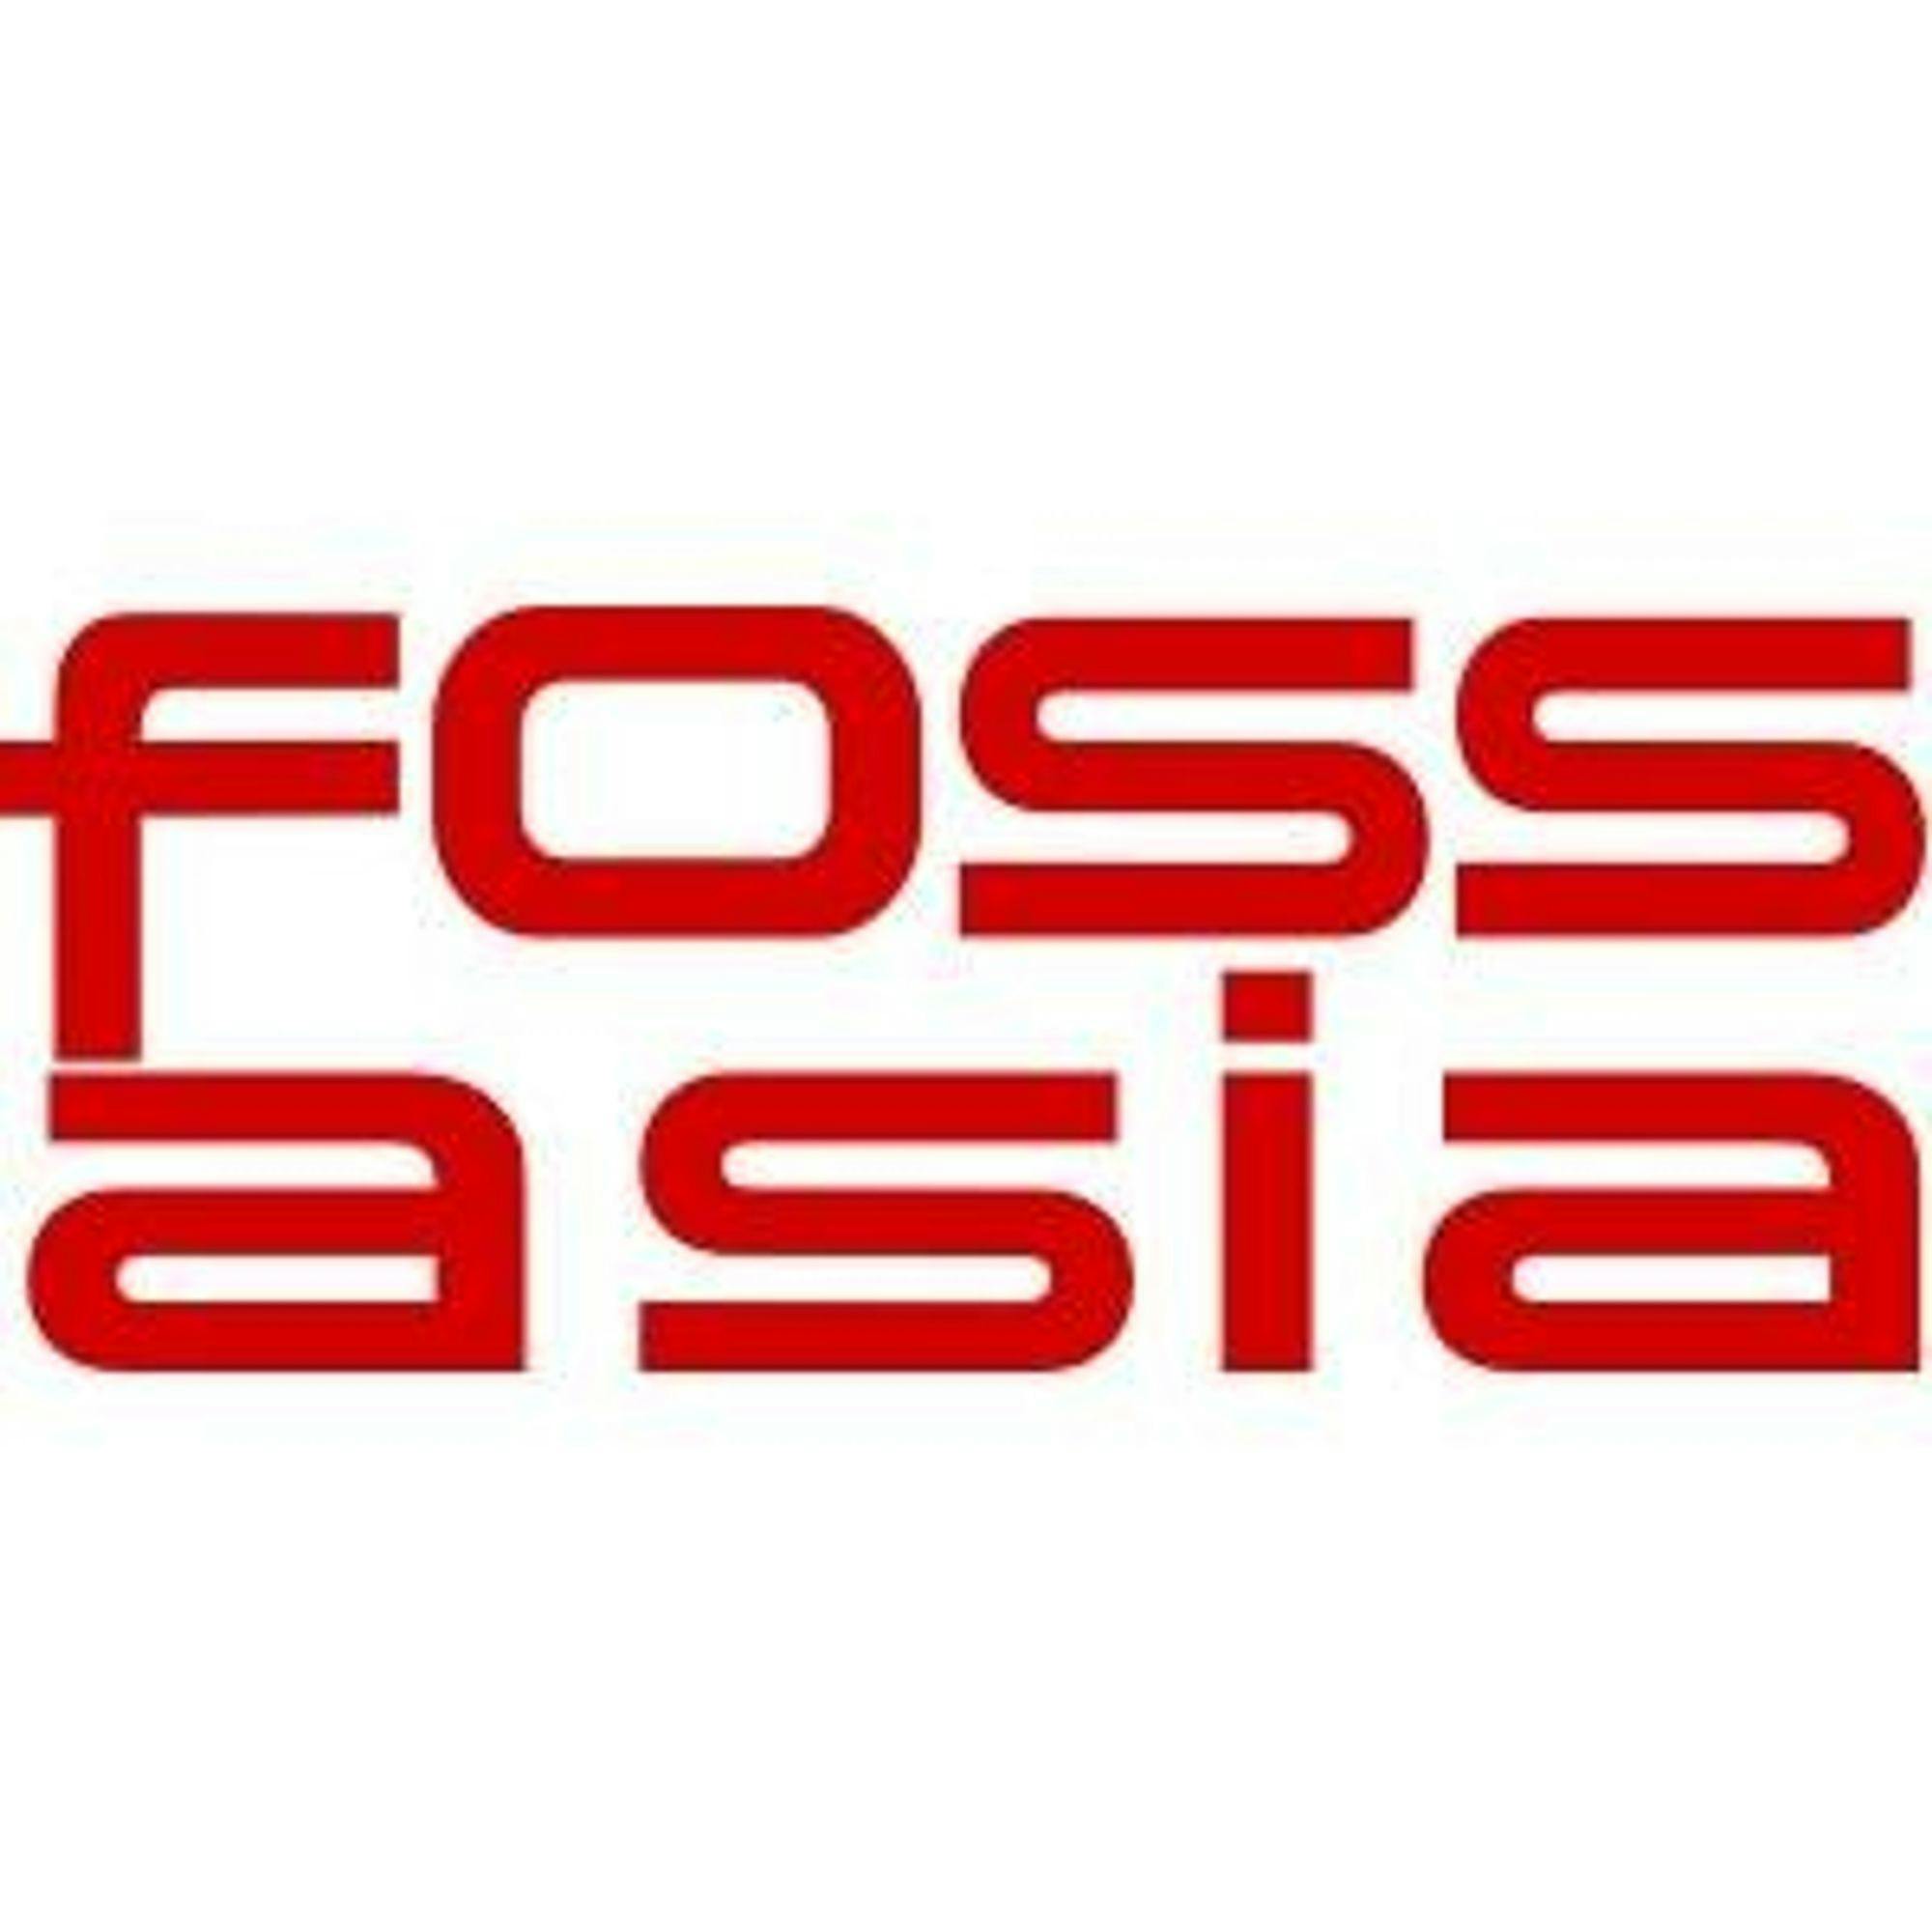 fossasia/susi_server